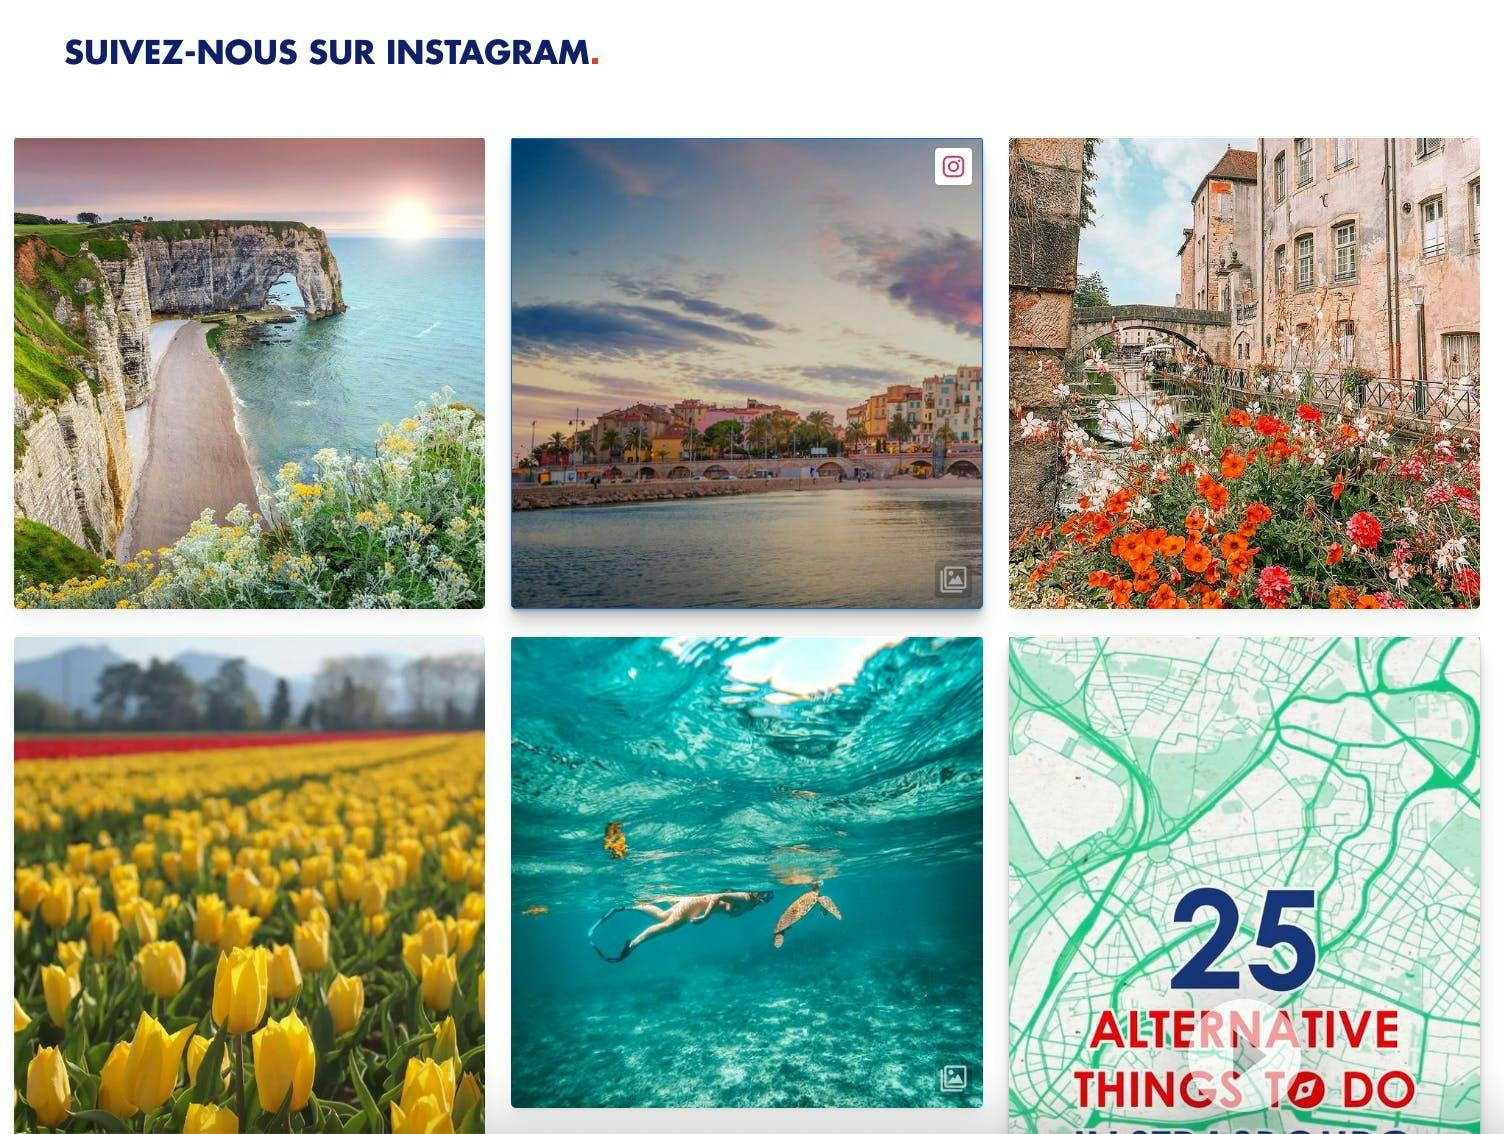 Social wall du site france.fr avec photos de leur compte Instagram